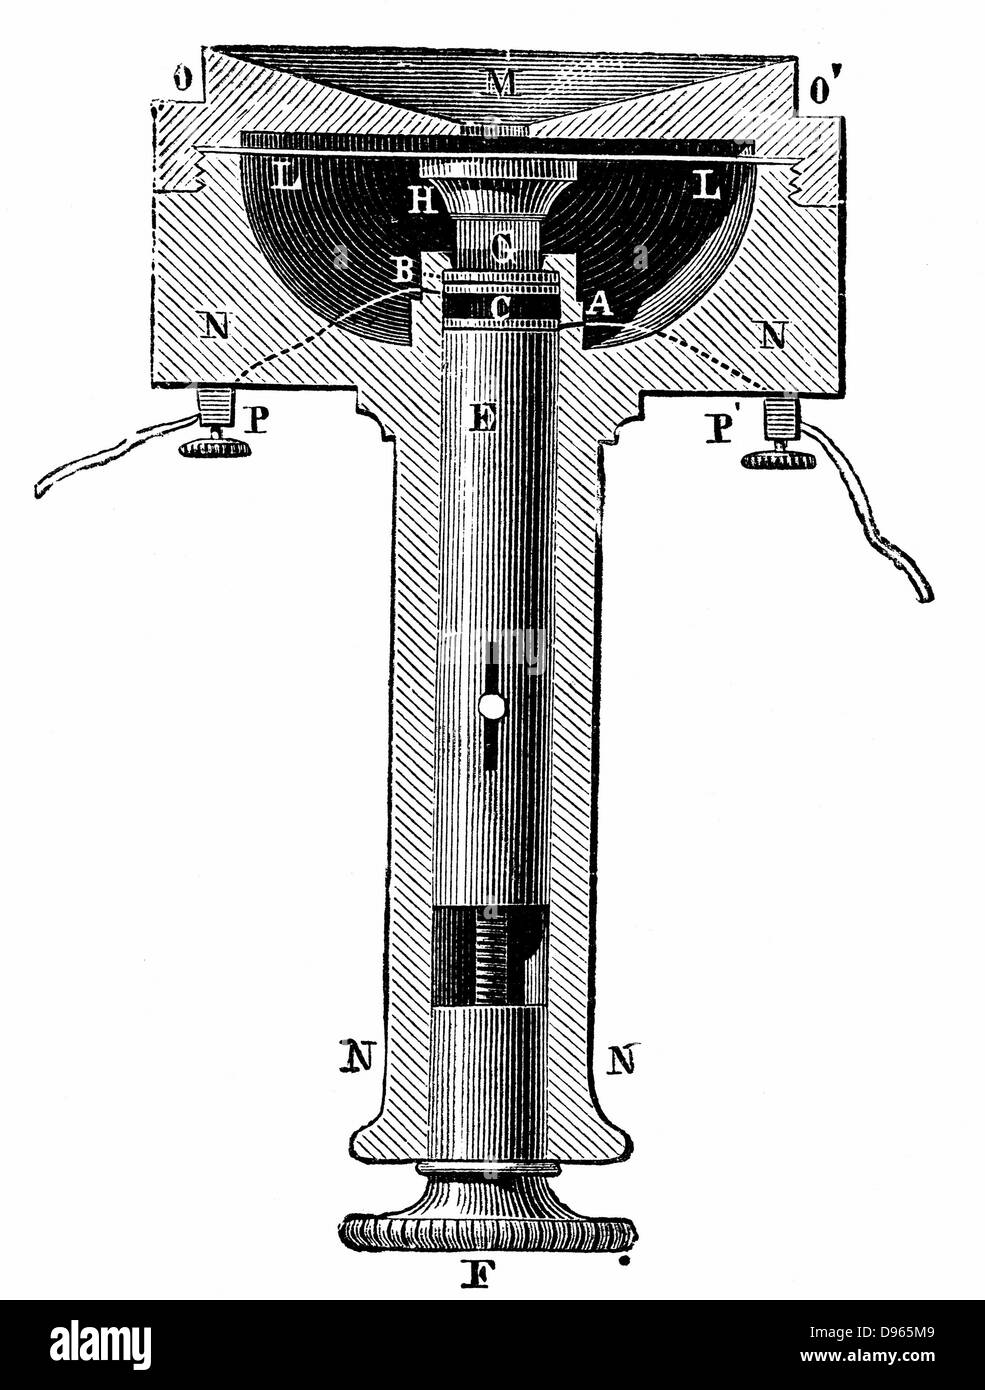 Querschnitt von Edisons Kokosnußoberteilen (Kohlenstoff) Taste Telefonsender (Mikrofon).  Holzstich-c1891. Stockfoto